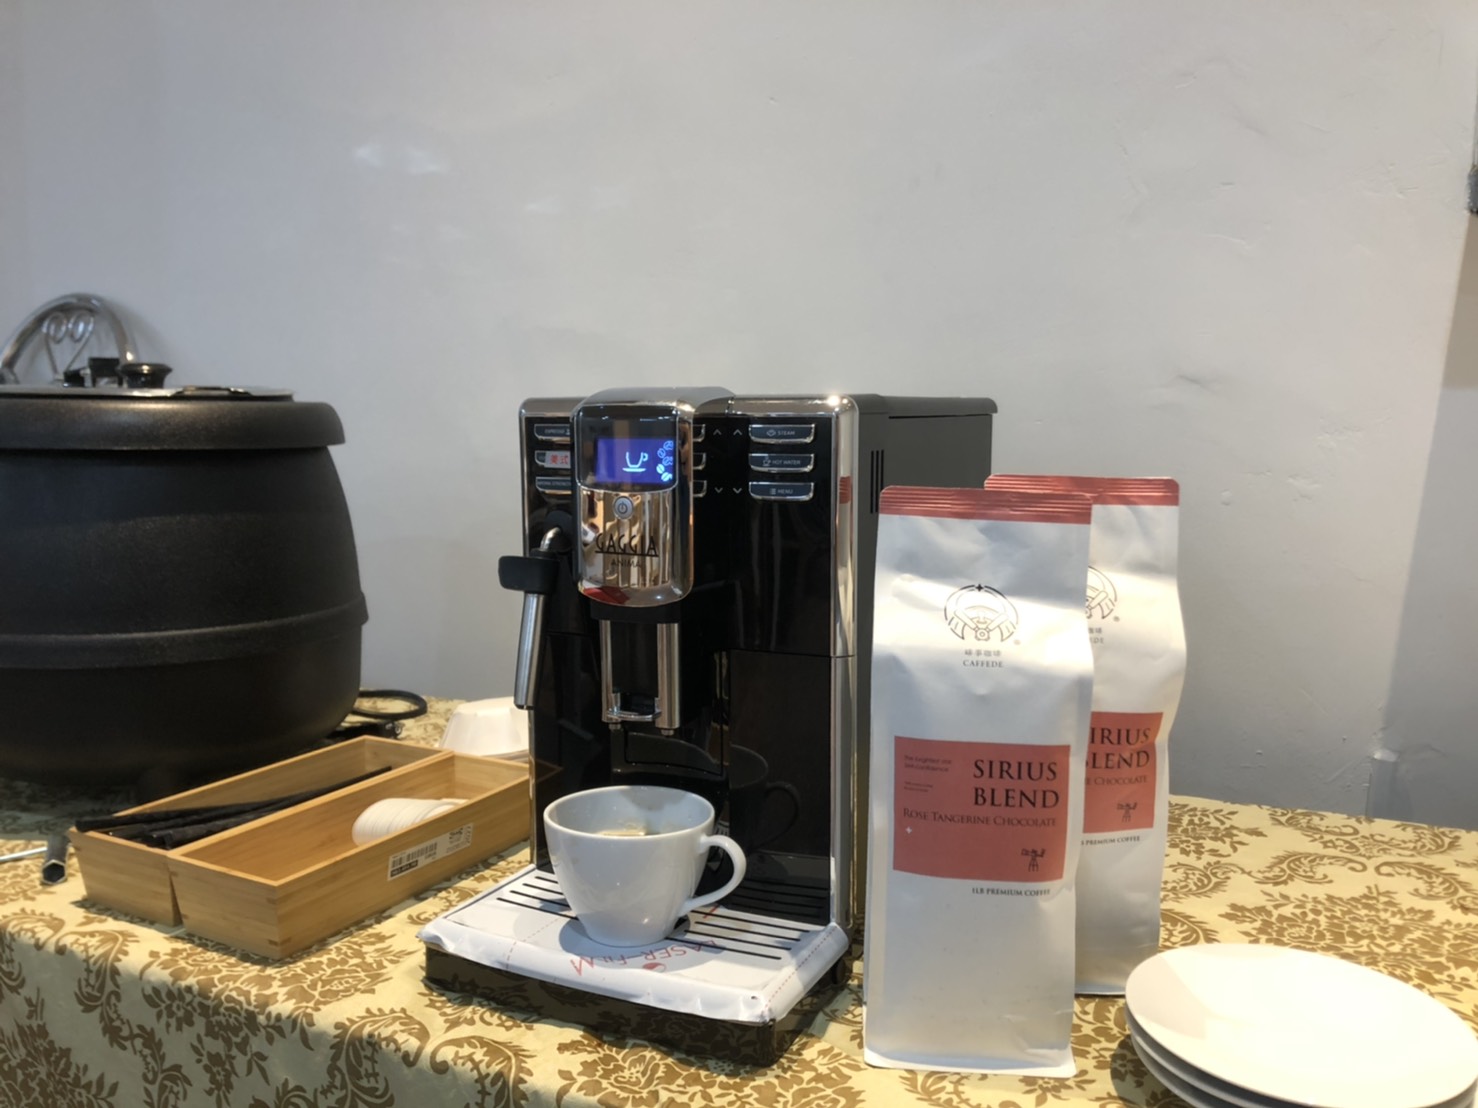 車城 民宿飯店用 早餐自助吧 屏東 全自動咖啡機 gaggia anima hg7272